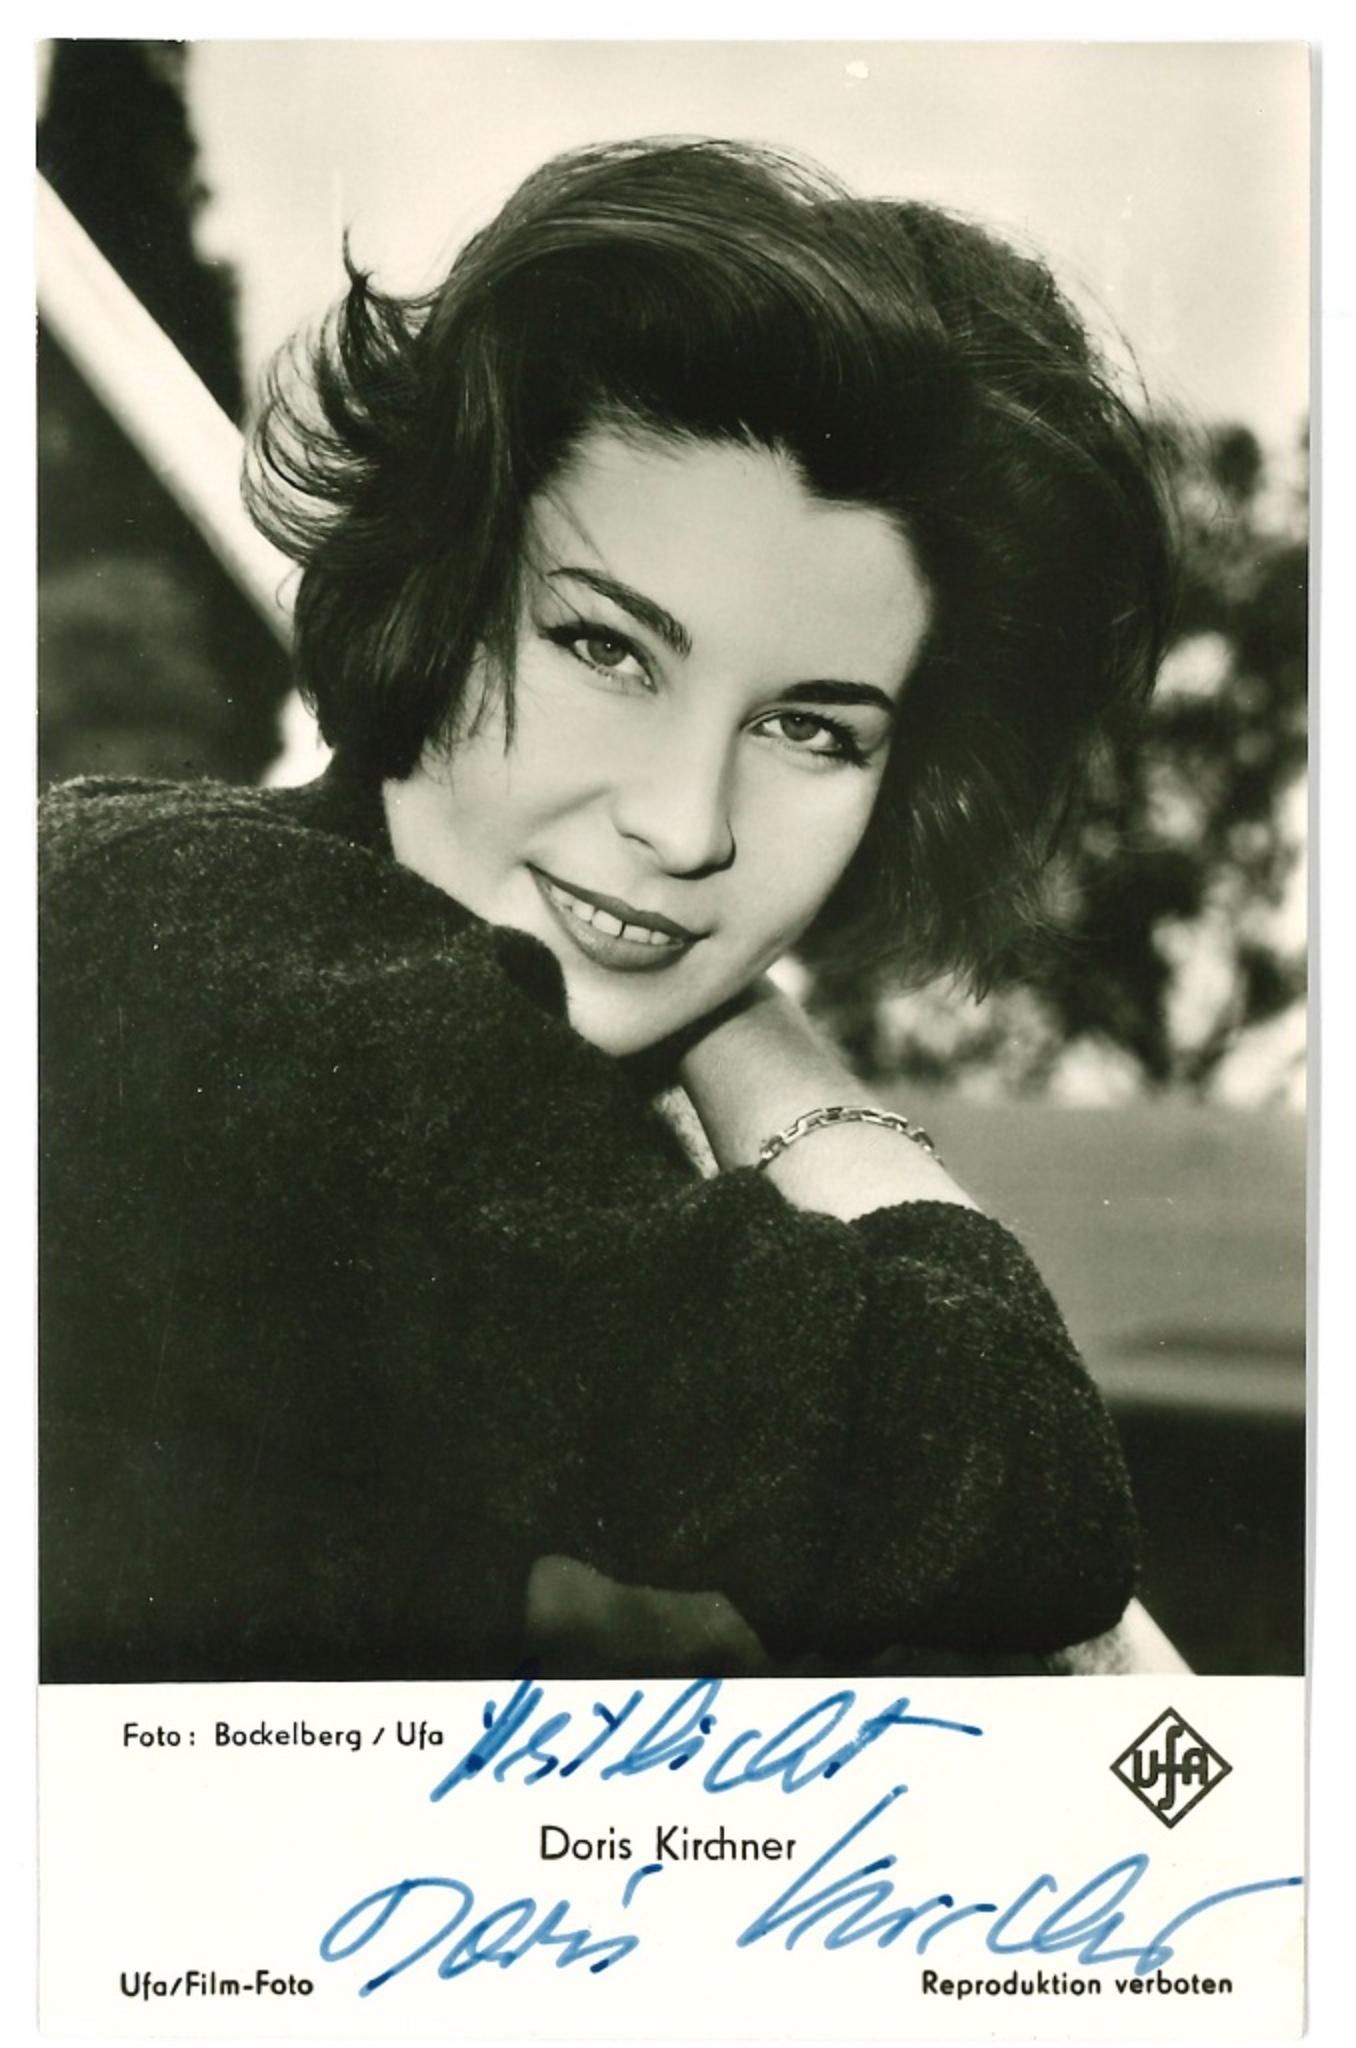 Unknown Portrait Photograph - Autograph Portrait of Doris Kirchner - Vintage b/w Postcard - 1960s